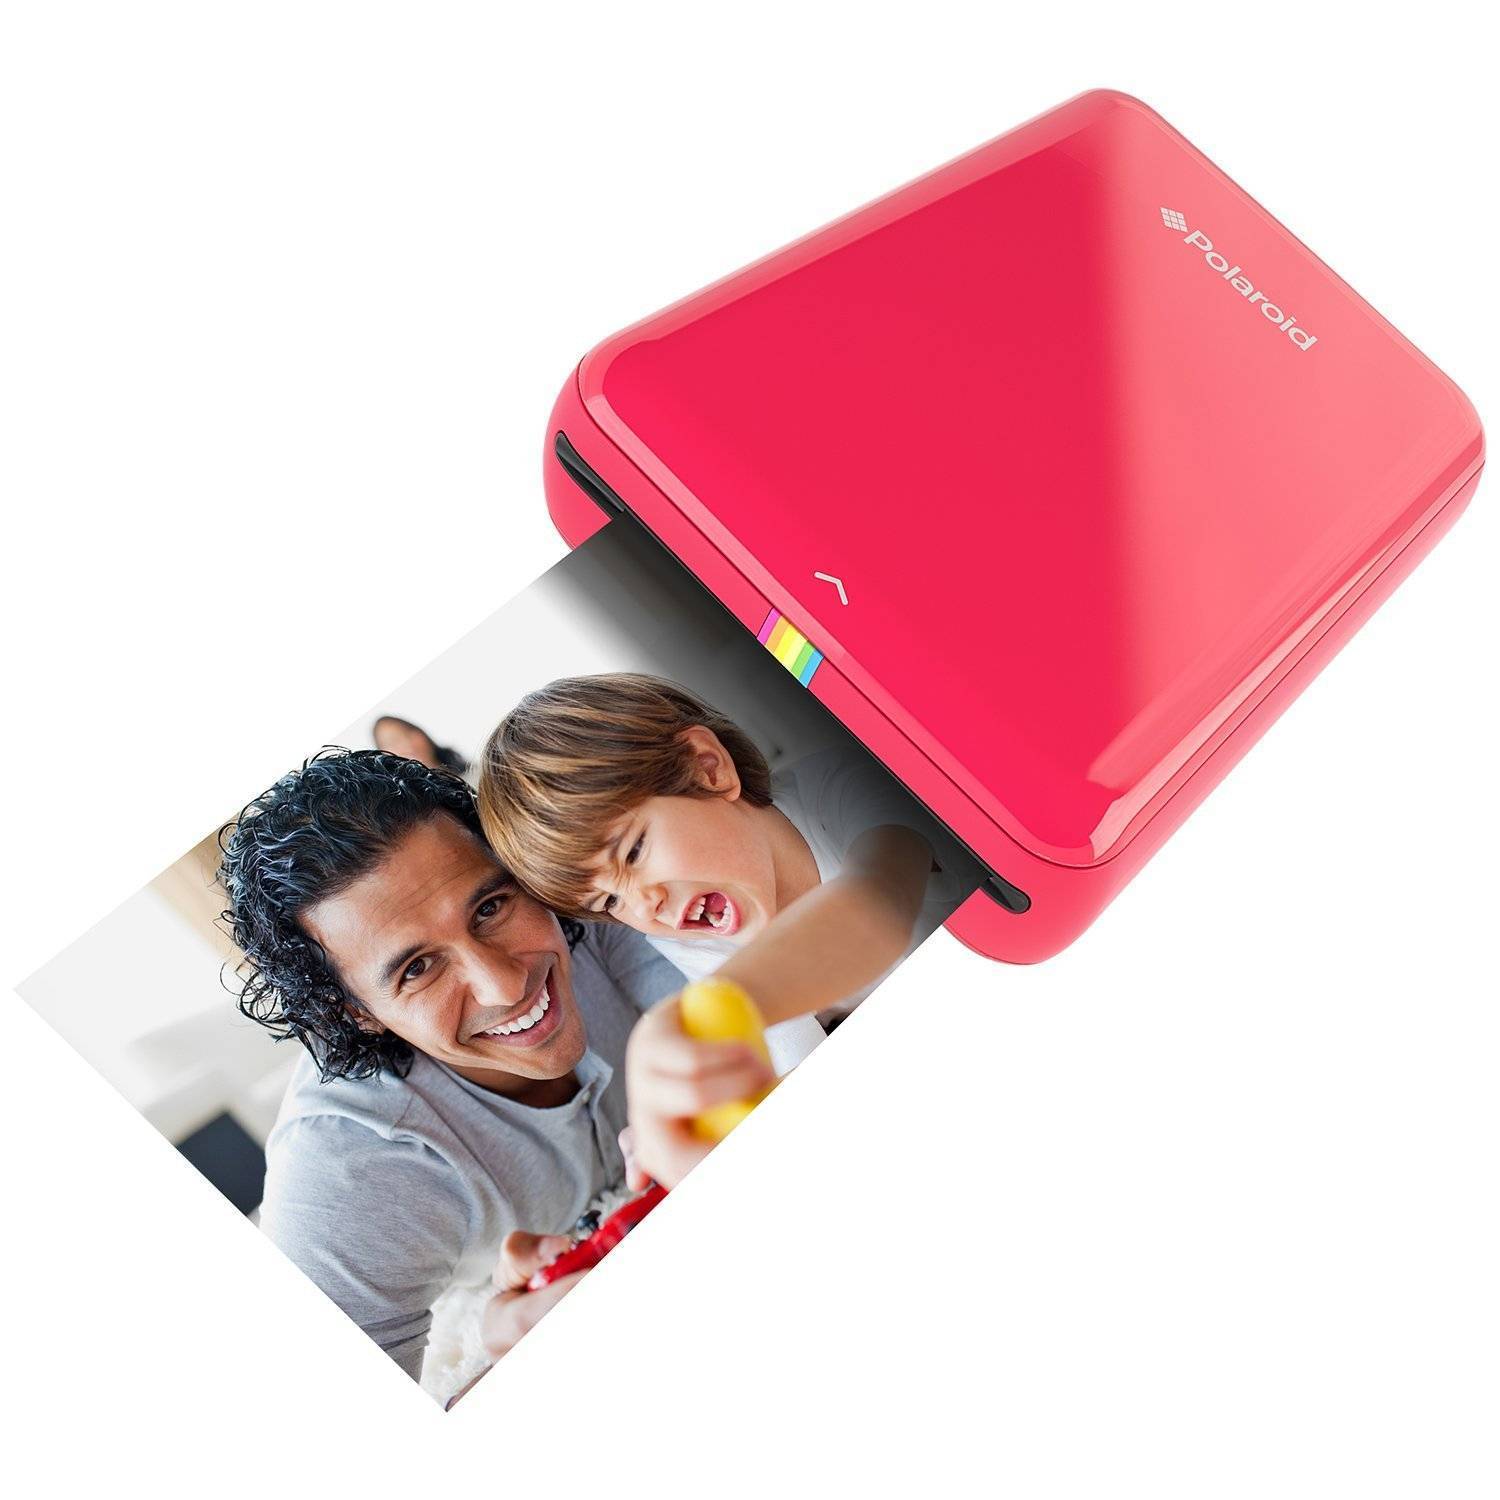 Компактный мобильный. Полароид принтер компактный. Карманный фотопринтер. Компактный принтер для фотографий со смартфона. Polaroid Red.